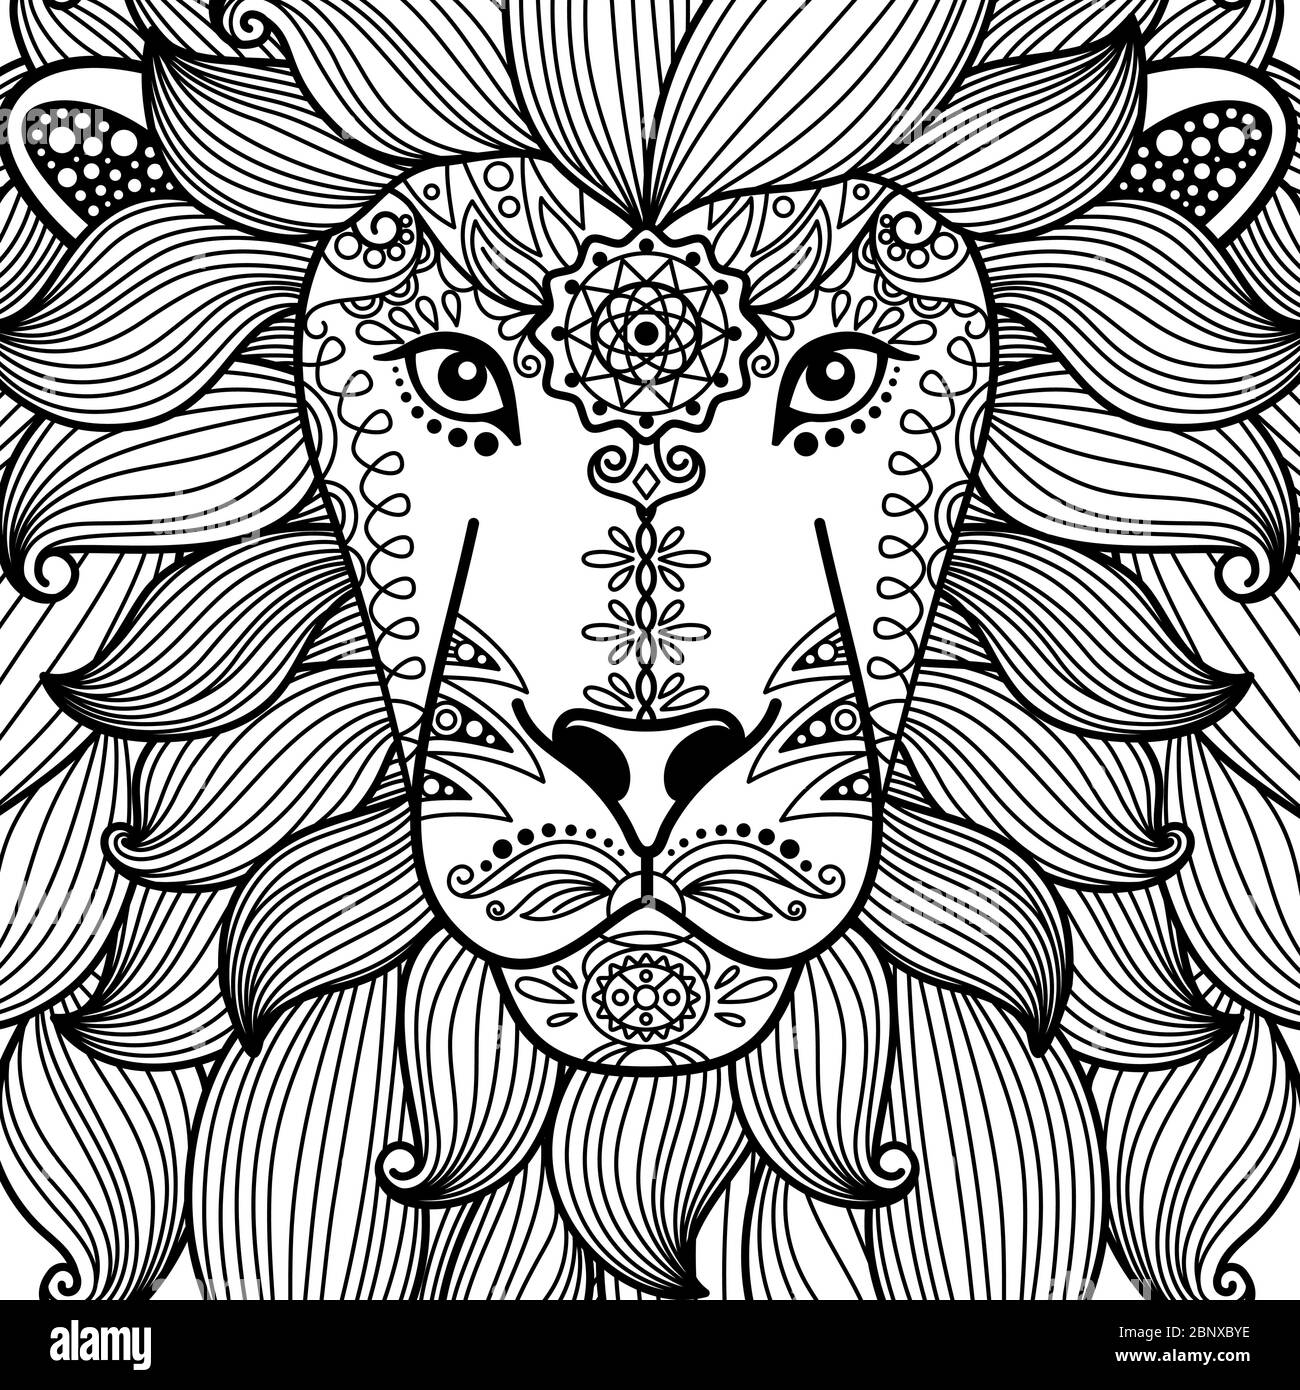 Dessin à la main mignon noir contour tête de lion avec motif floral ethnique Illustration de Vecteur